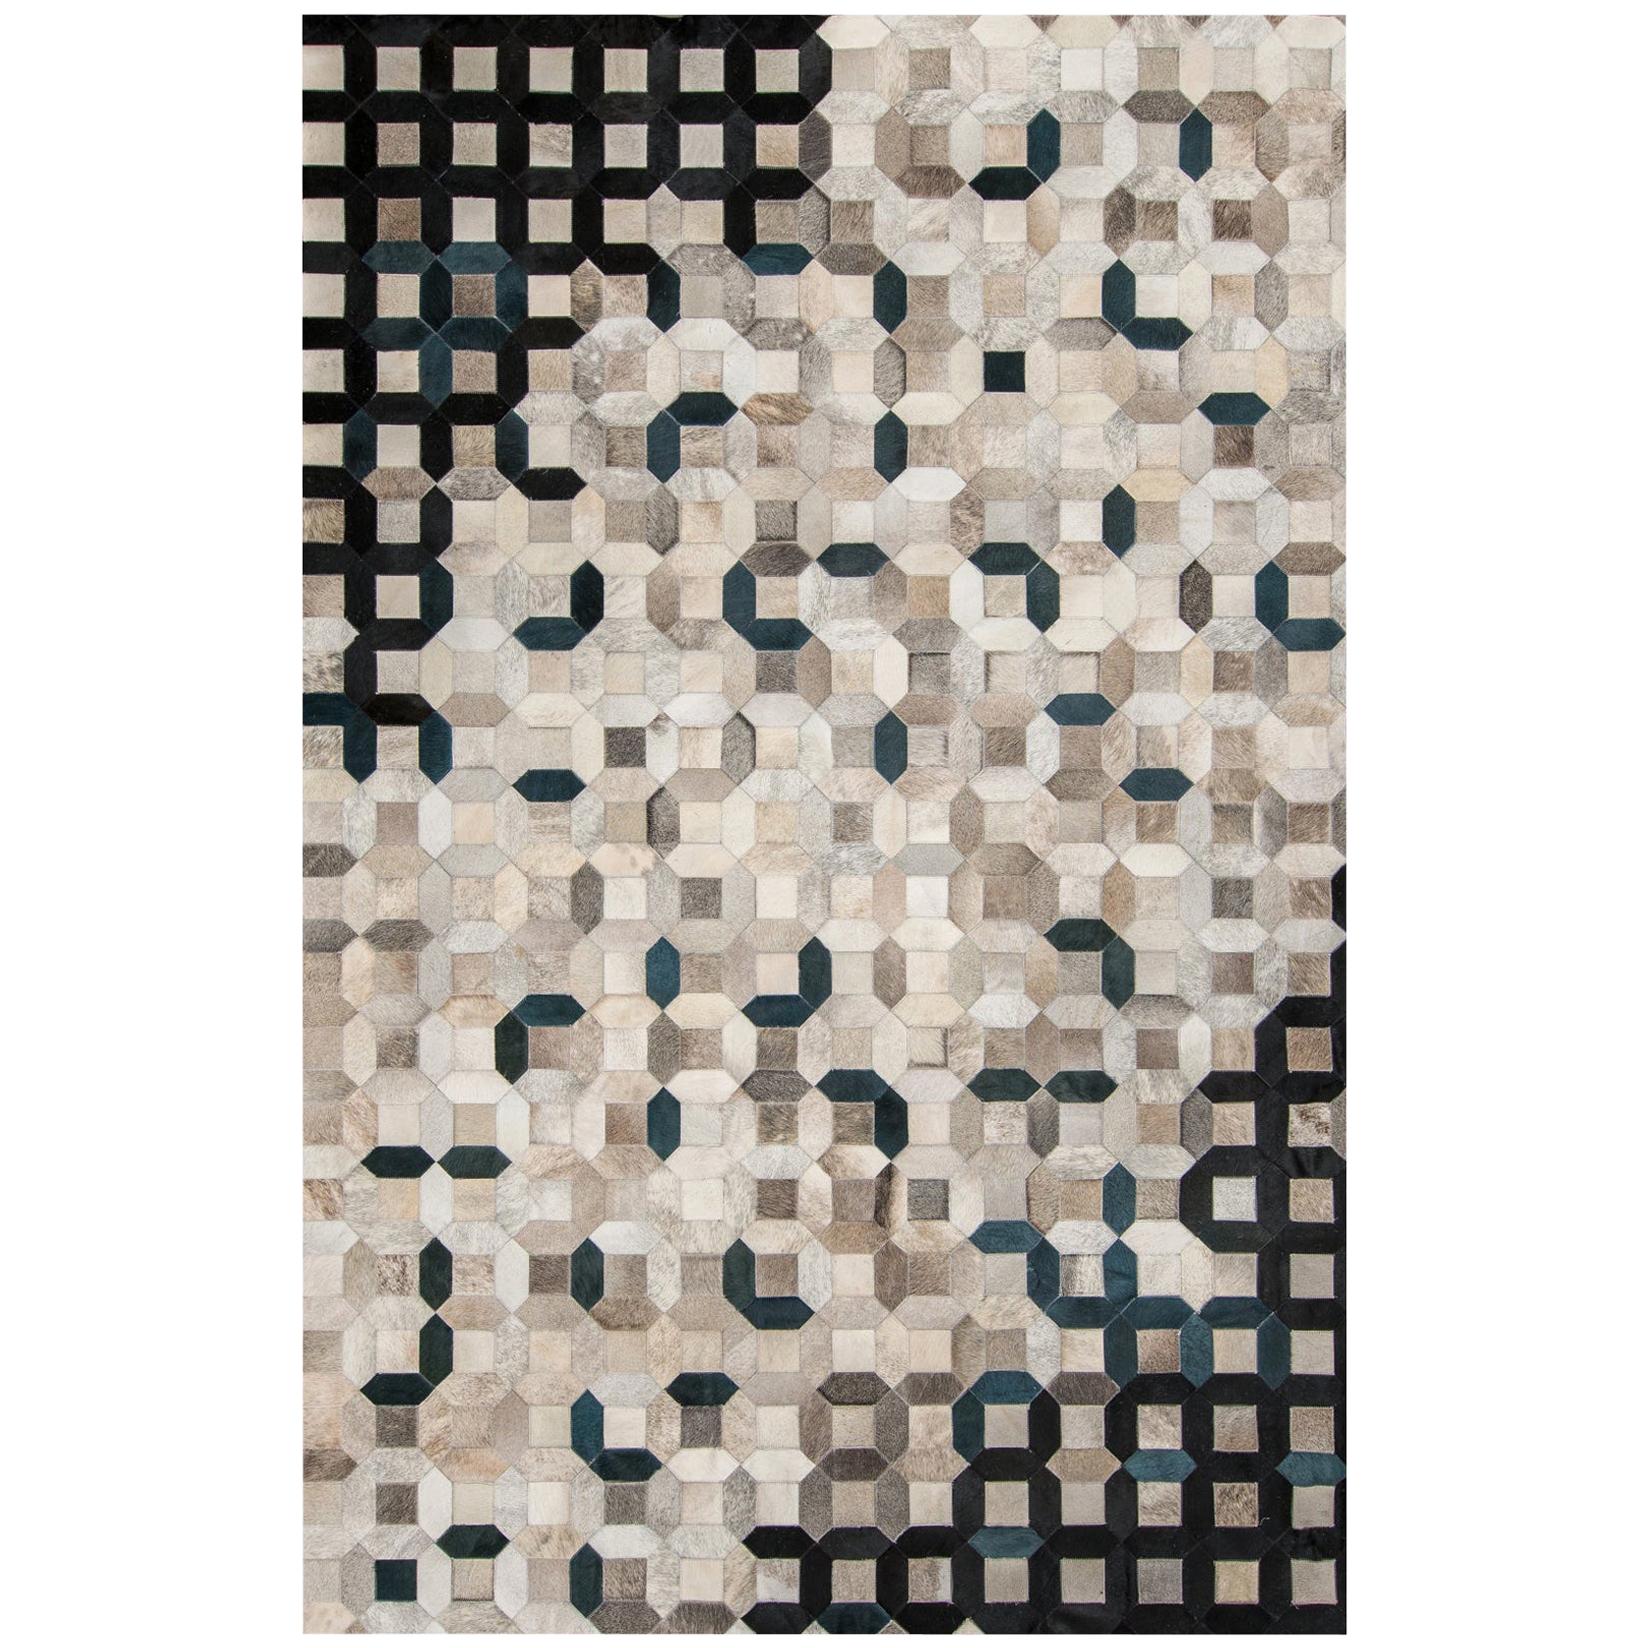 Black, gray tessellation Trellis Cowhide Area Floor Rug X-Large 